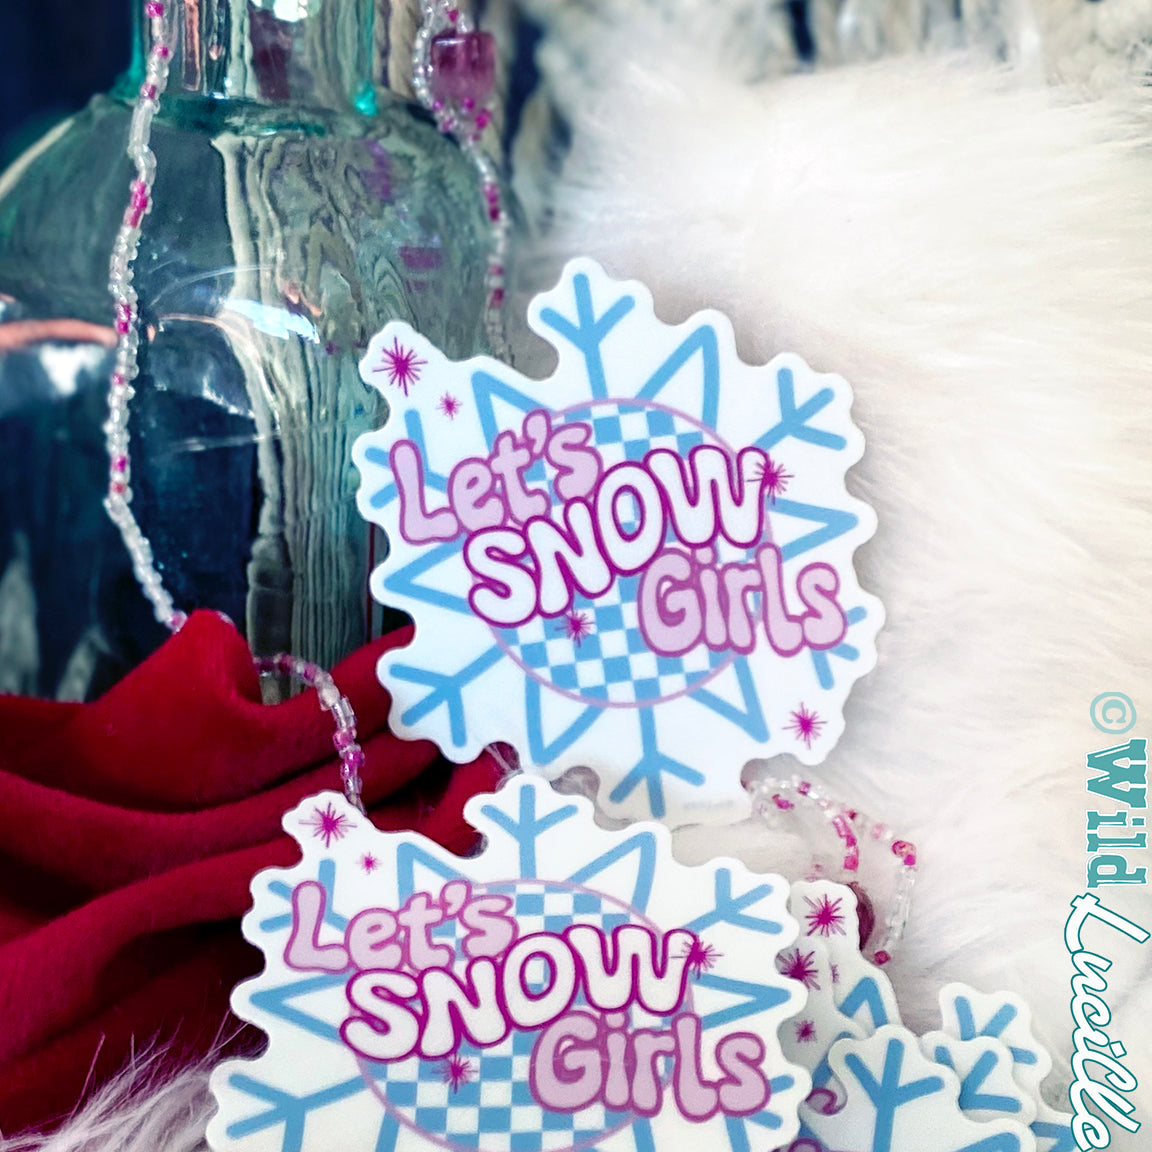 Let's Snow Girls - Winter Western Vinyl Sticker Decals